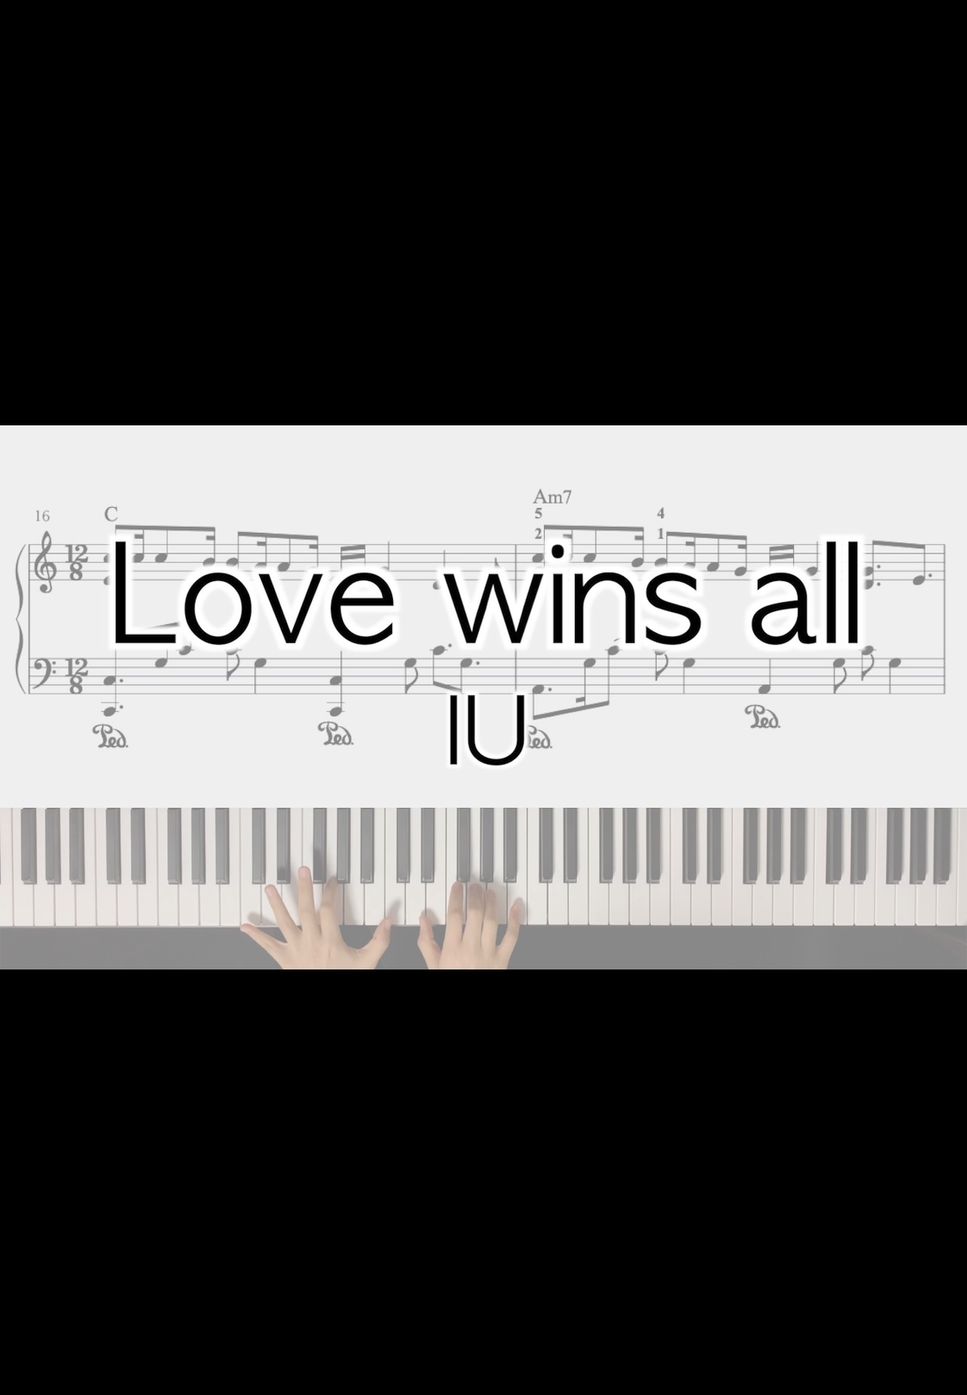 IU - Love wins all (original+easy ver.) by PeachPiano